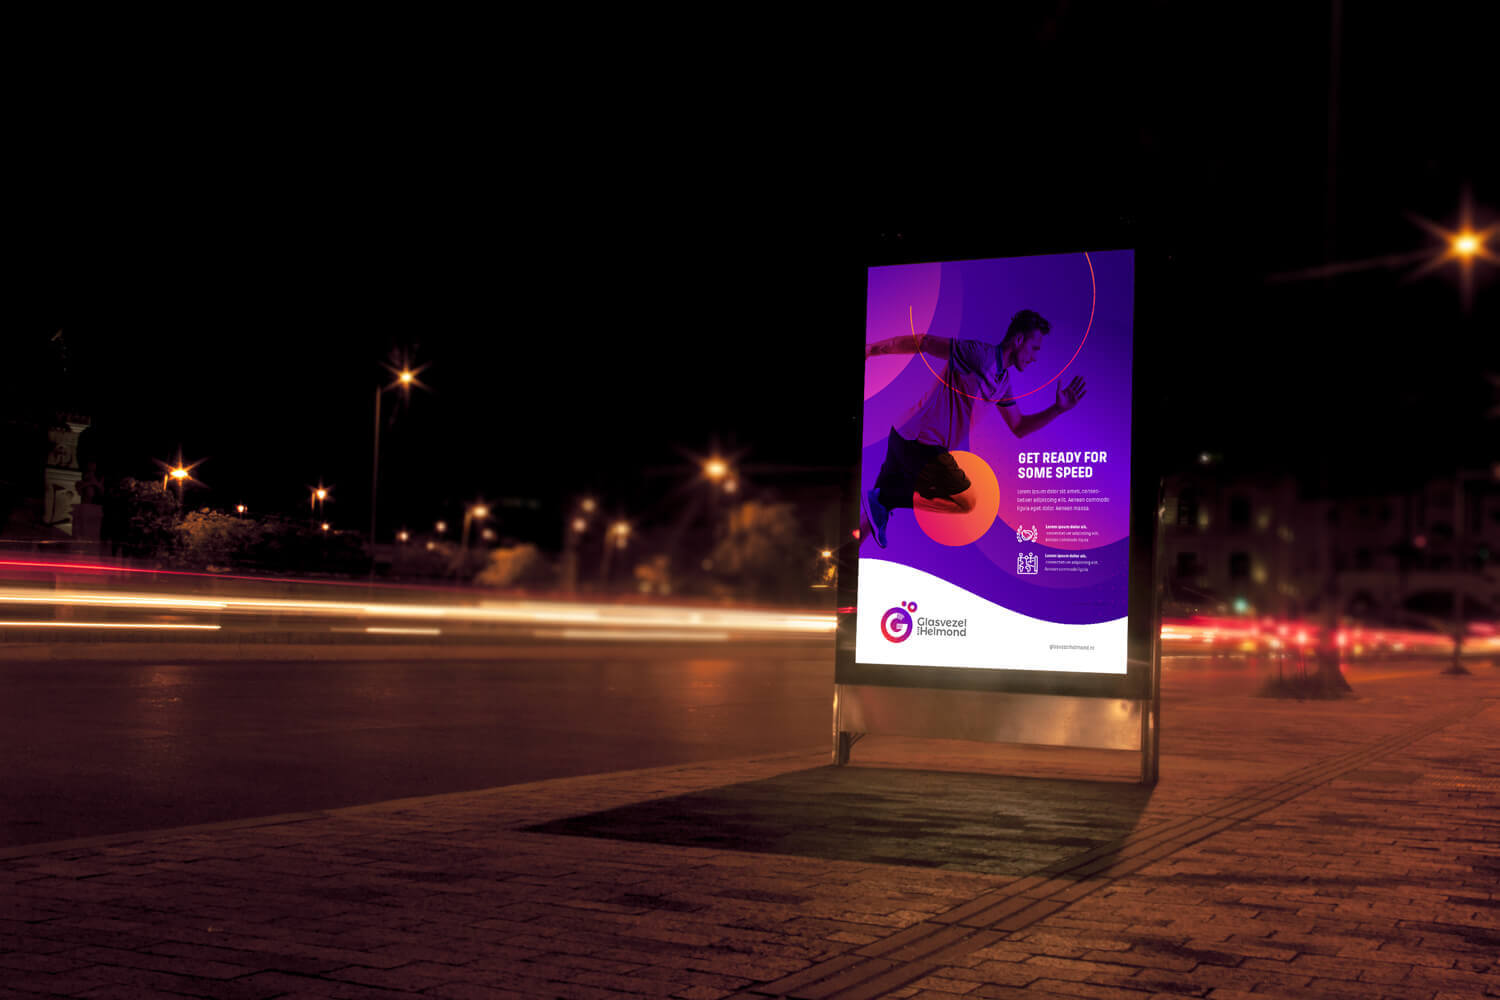 Bord met poster voor Glasvezel Helmond aan snelweg in avond met flitsende autoverlichting en slogan 'Get ready for some speed'